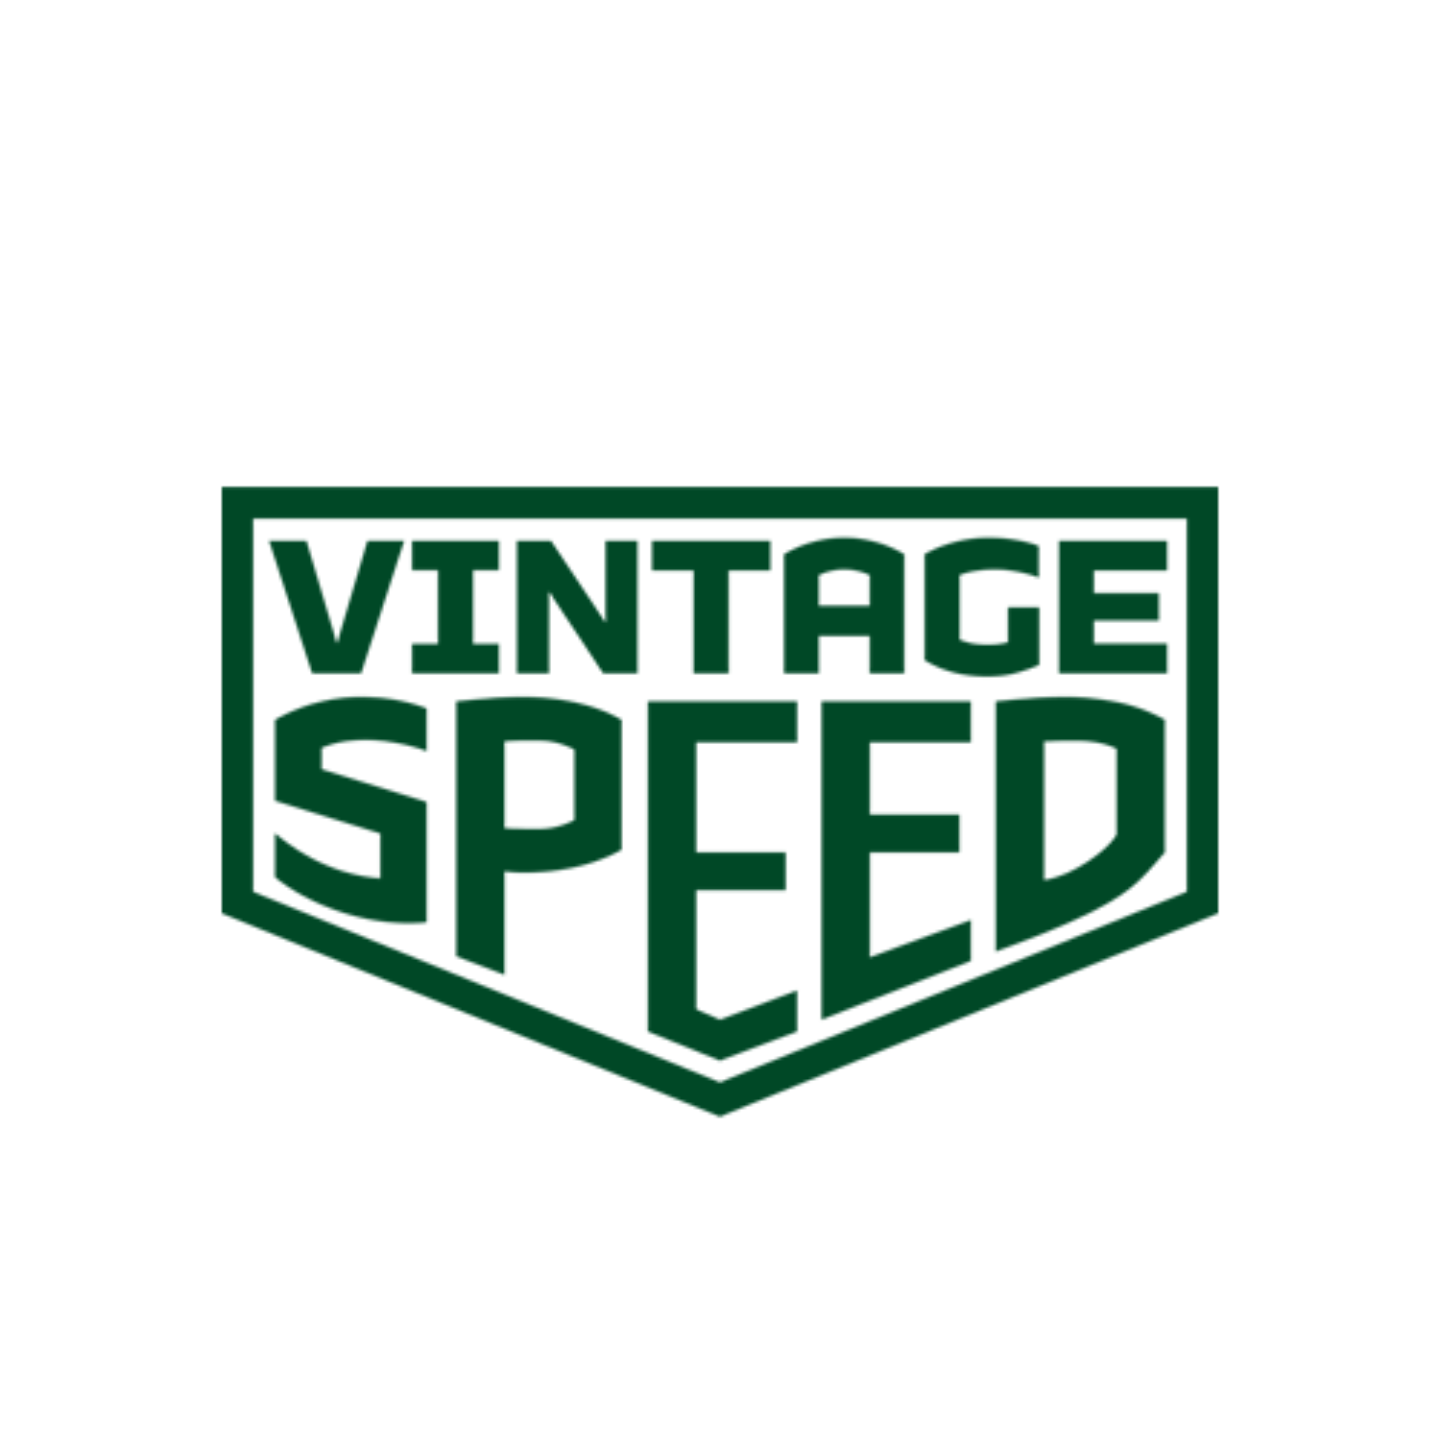 Vintage speed